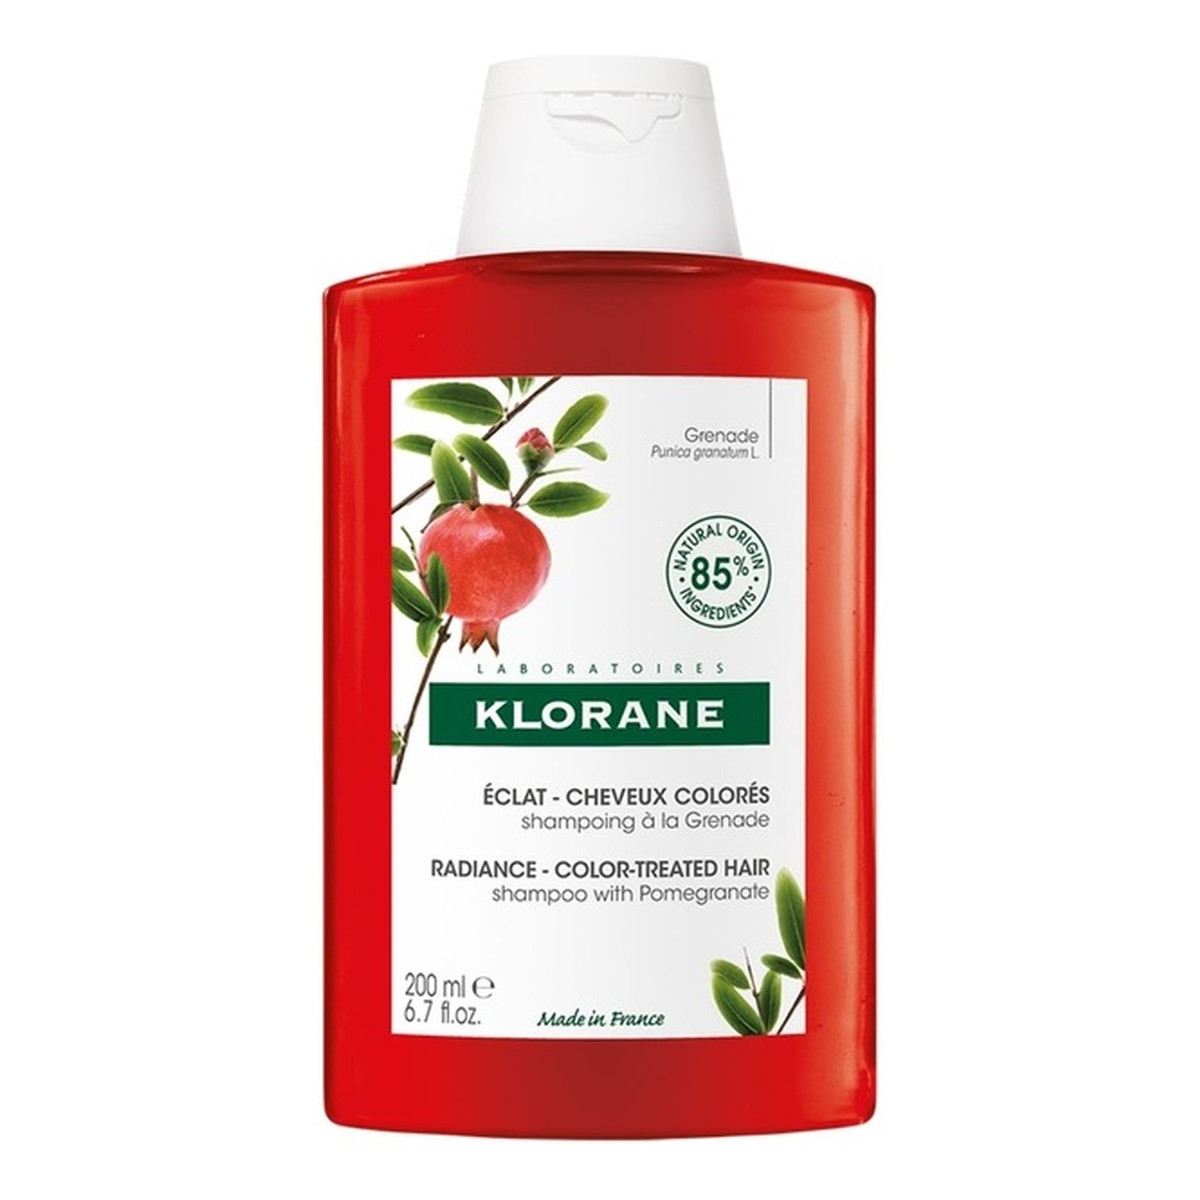 Klorane Radiance shampoo szampon do włosów farbowanych 200ml